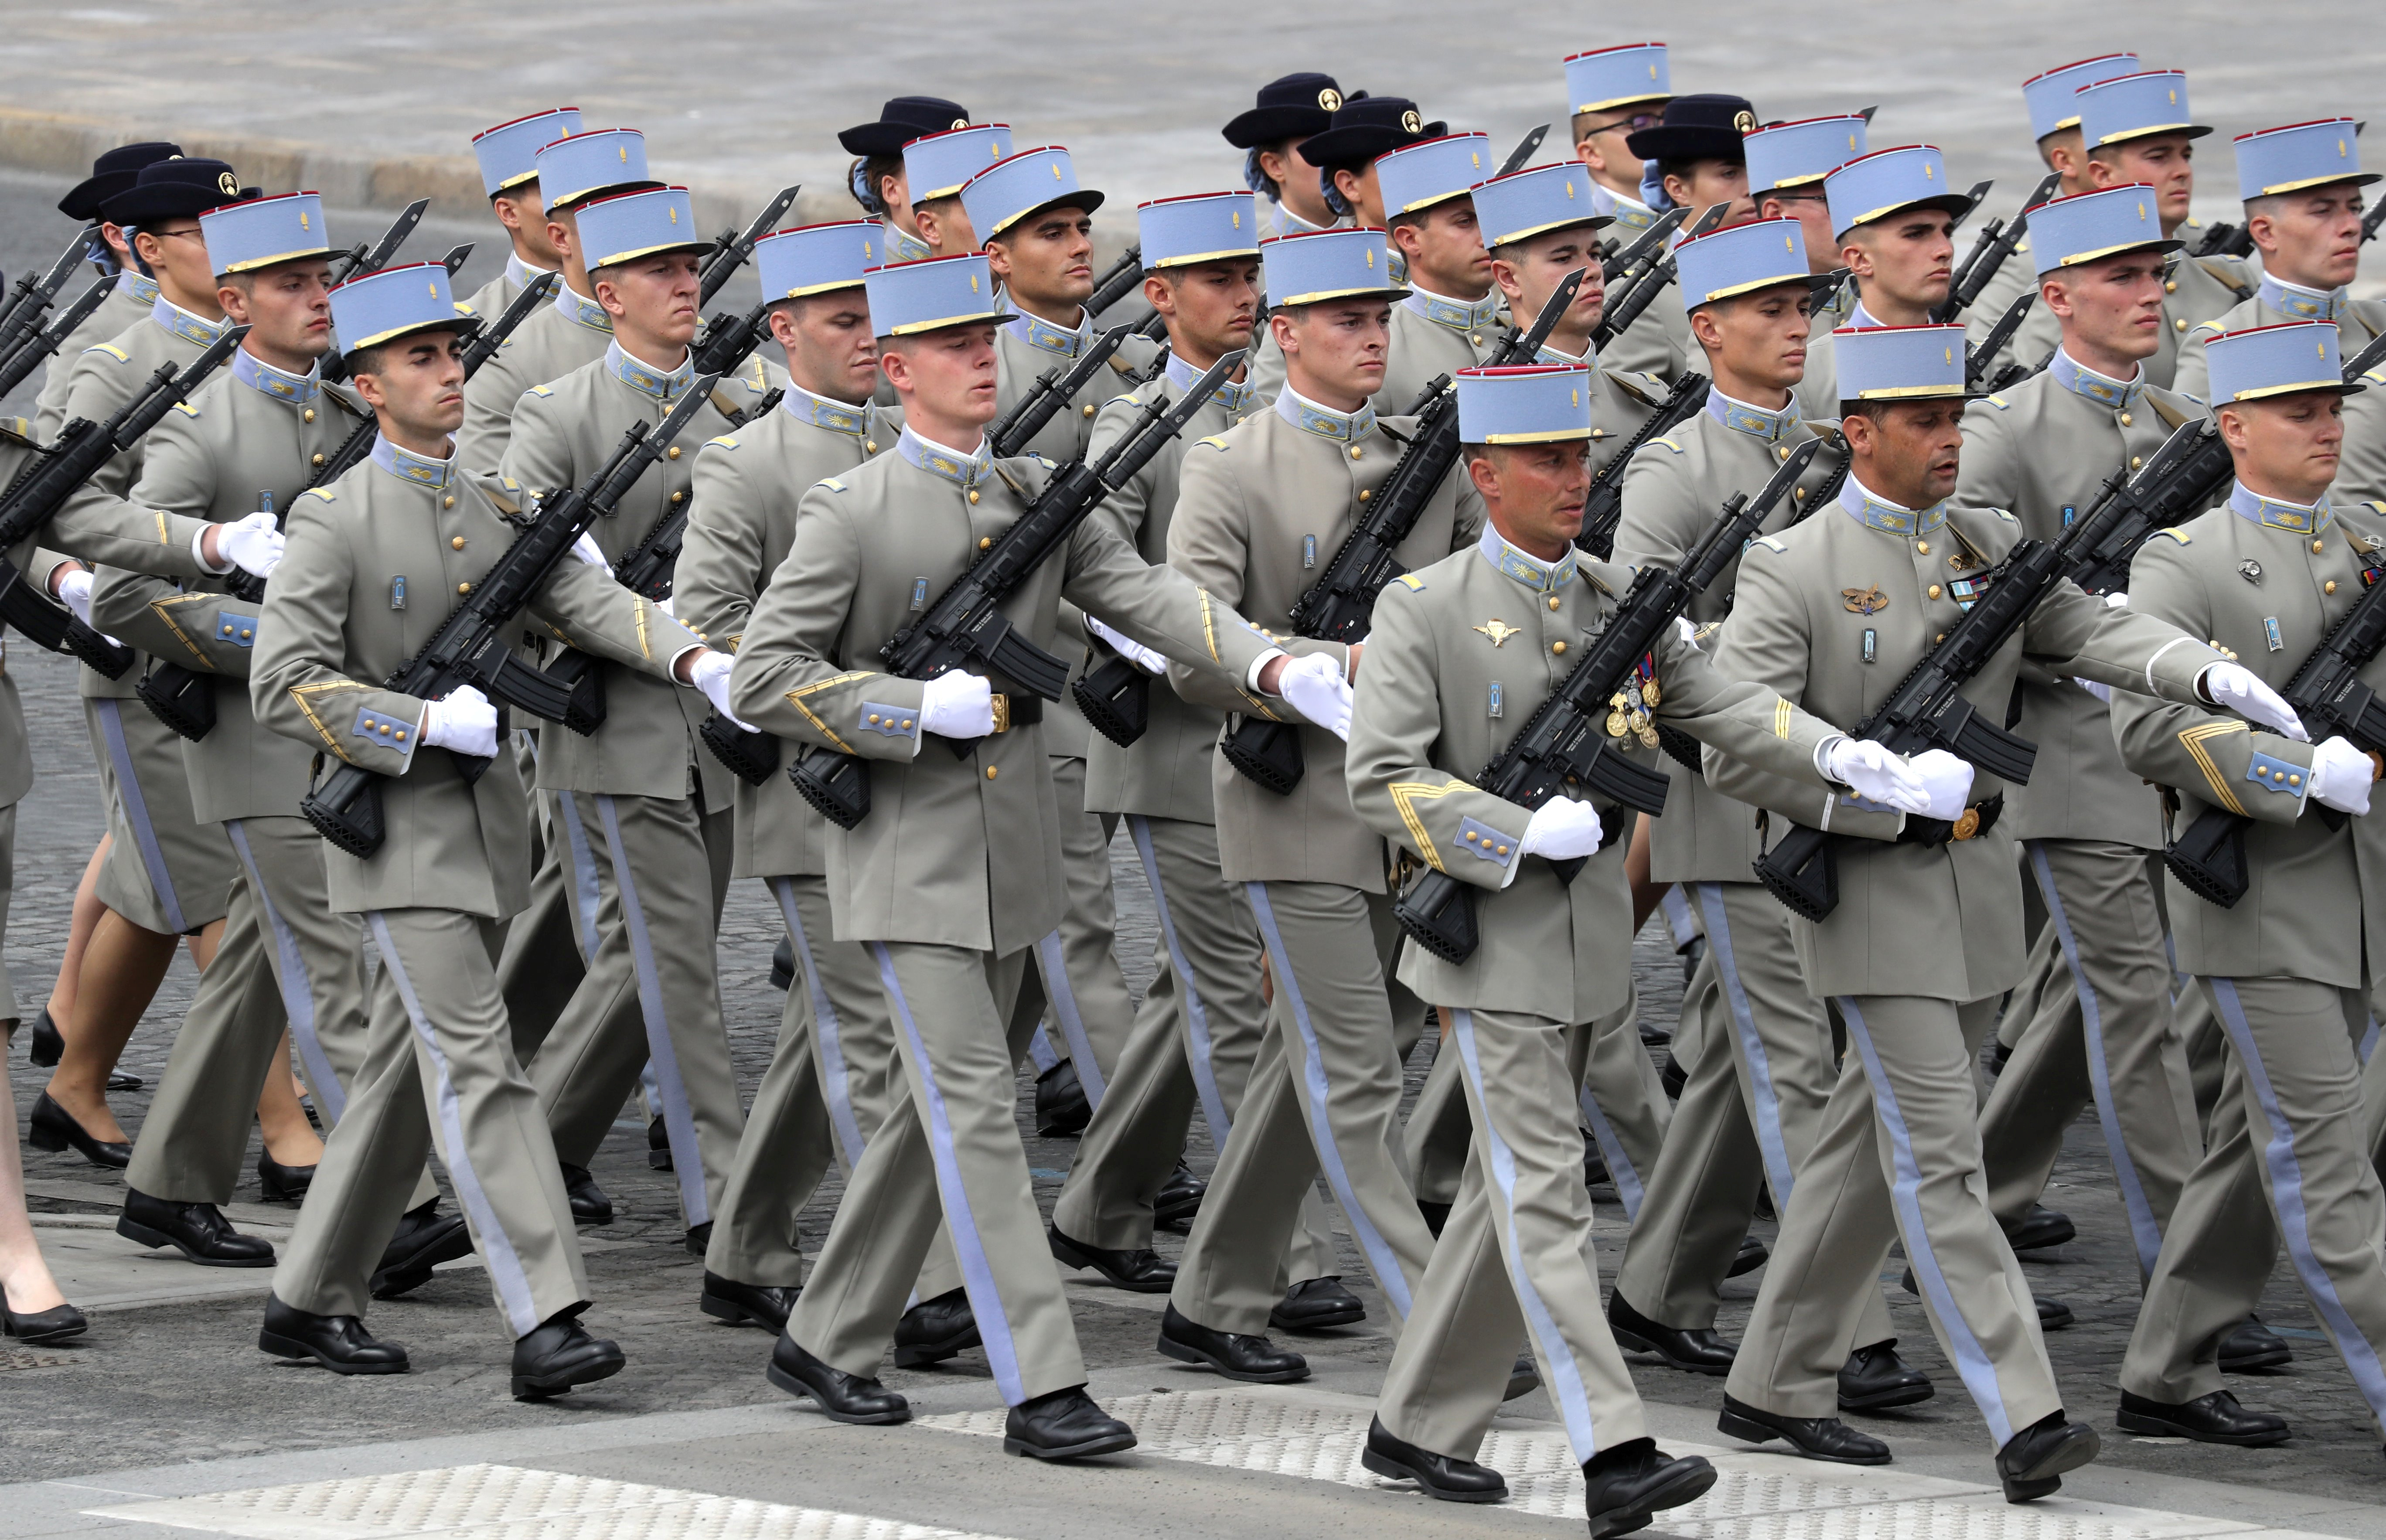 Oficiales participan en la ceremonia militar anual del Día de la Bastilla en la Plaza de la Concordia en París, 14 de julio de 2020 (Ludovic Marin/Pool vía REUTERS)